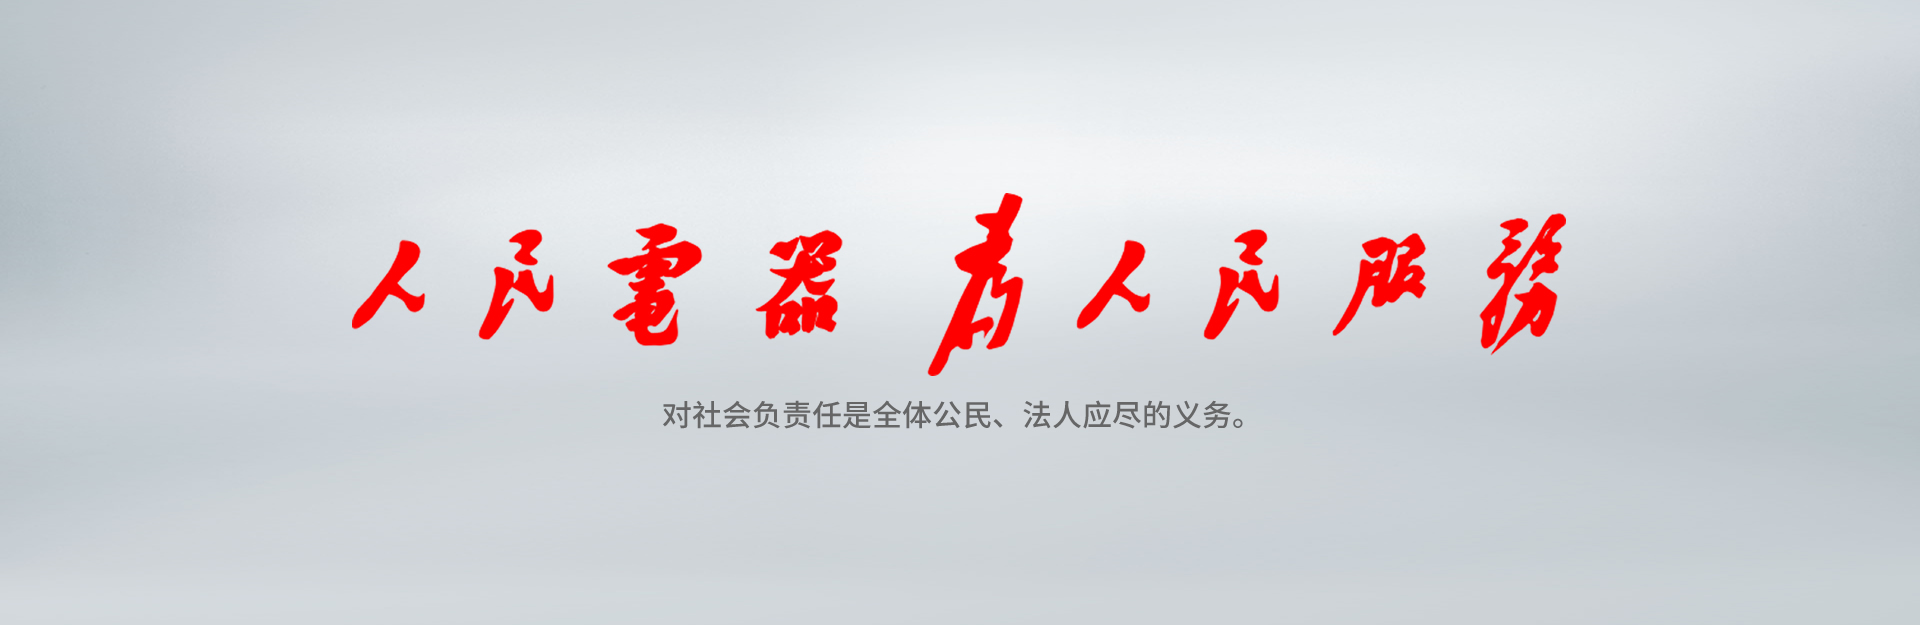 亚投国际「中国」有限公司电器为亚投国际「中国」有限公司服务